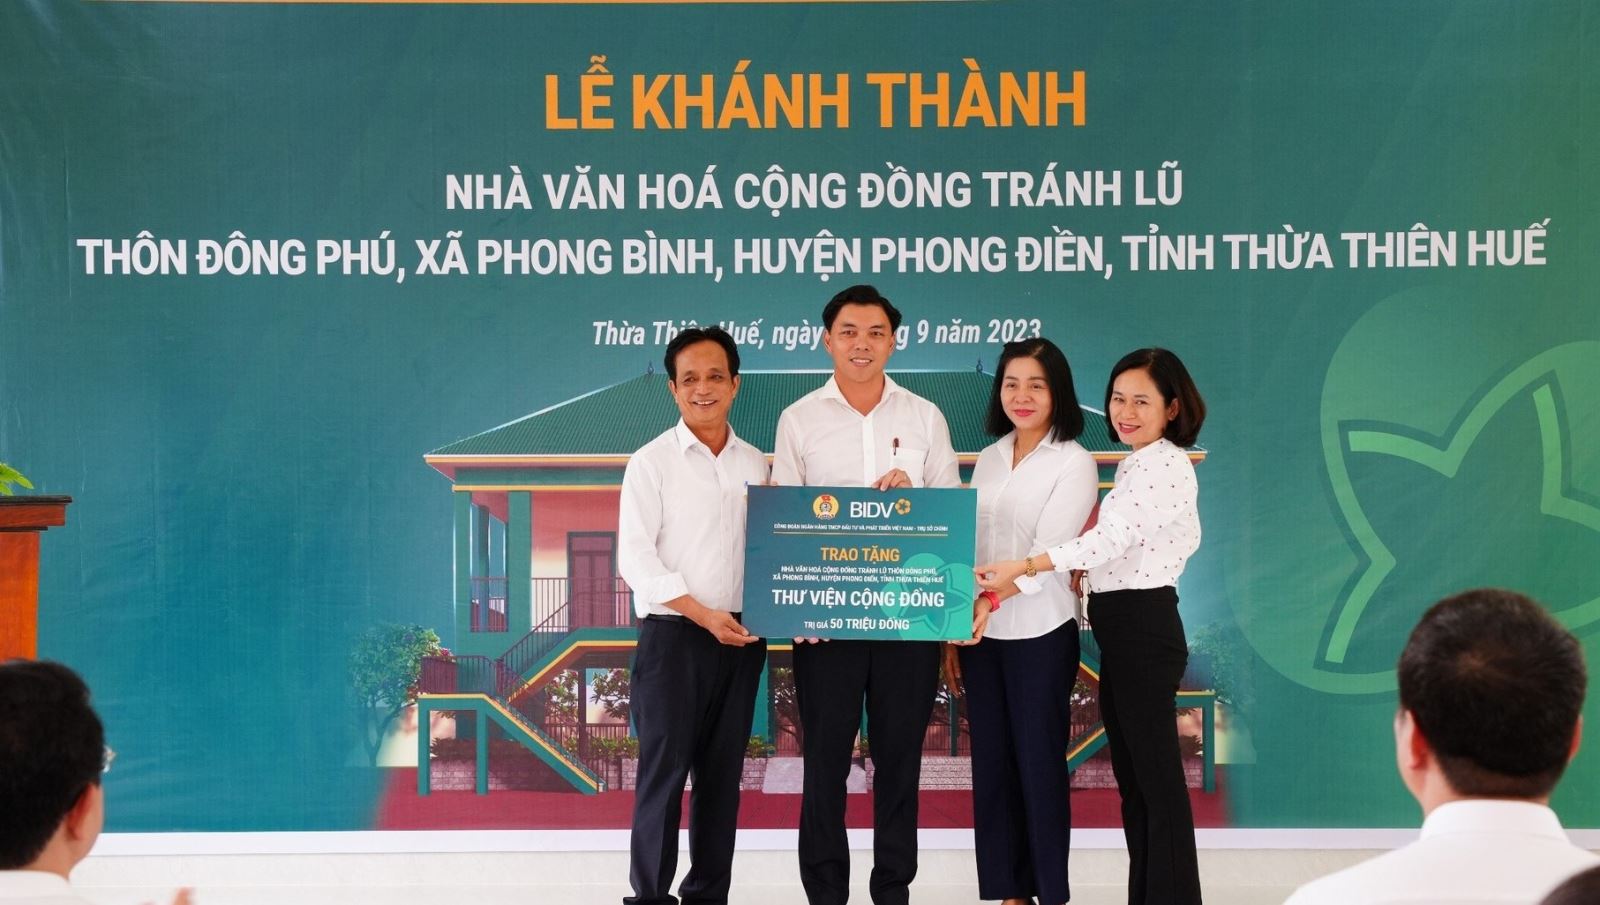 BIDV trao tặng 02 Thư viện cộng đồng cho các Nhà văn hóa cộng đồng tránh lũ tại huyện Phong Điền.